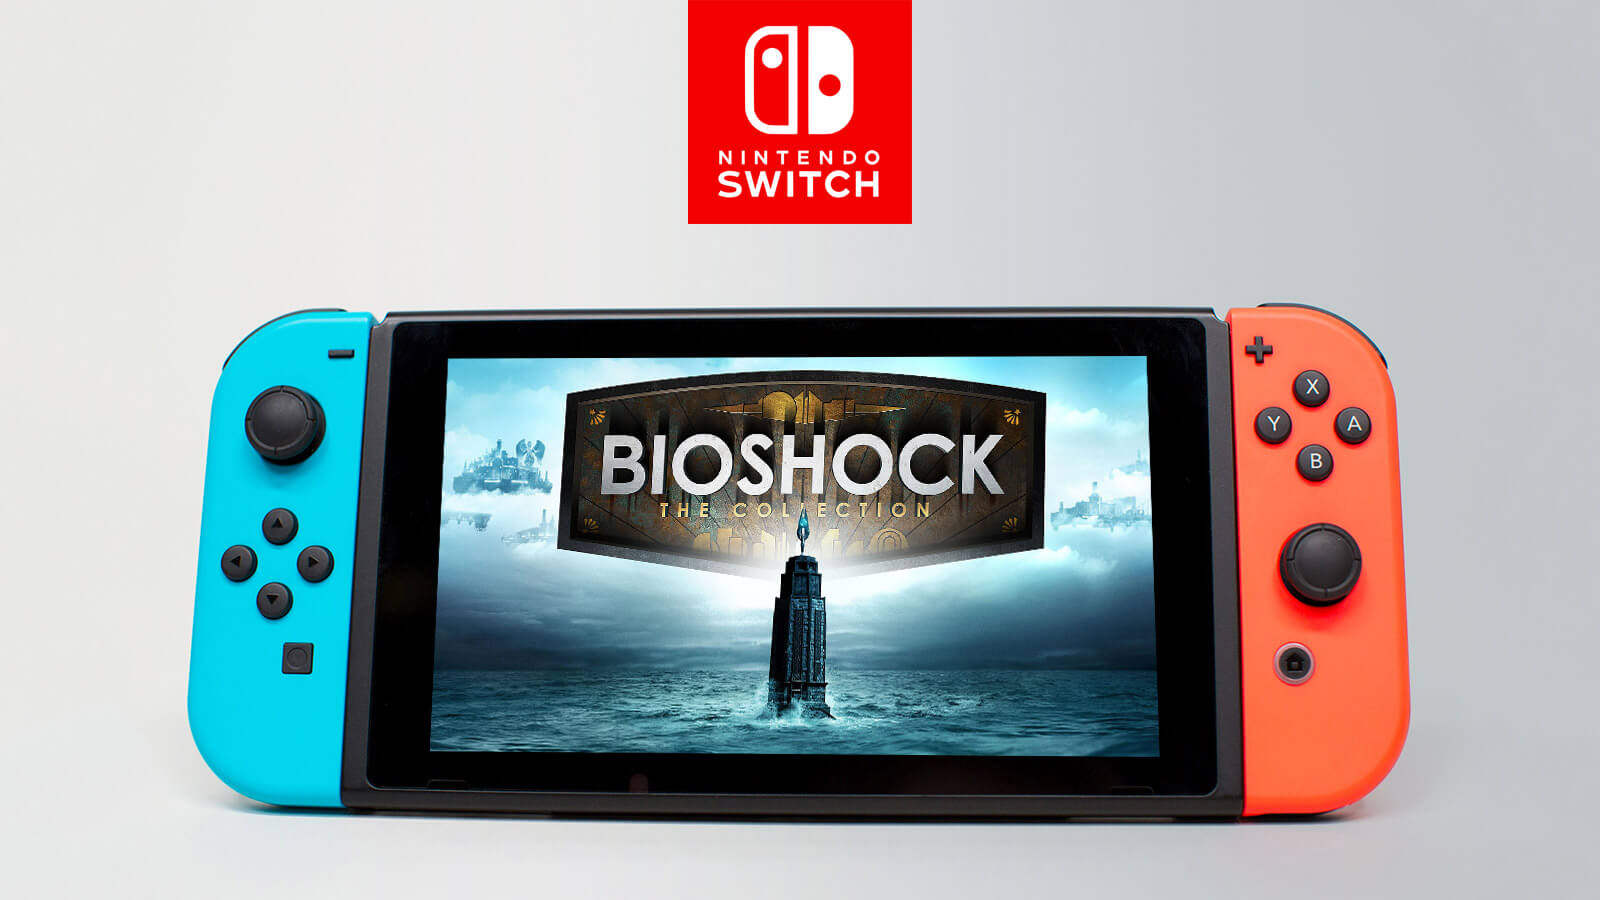 Bioshock nintendo. Bioshock Nintendo Switch. Bioshock 1 Nintendo Switch. Биошок коллекшн на Нинтендо. Bioshock the collection Nintendo.